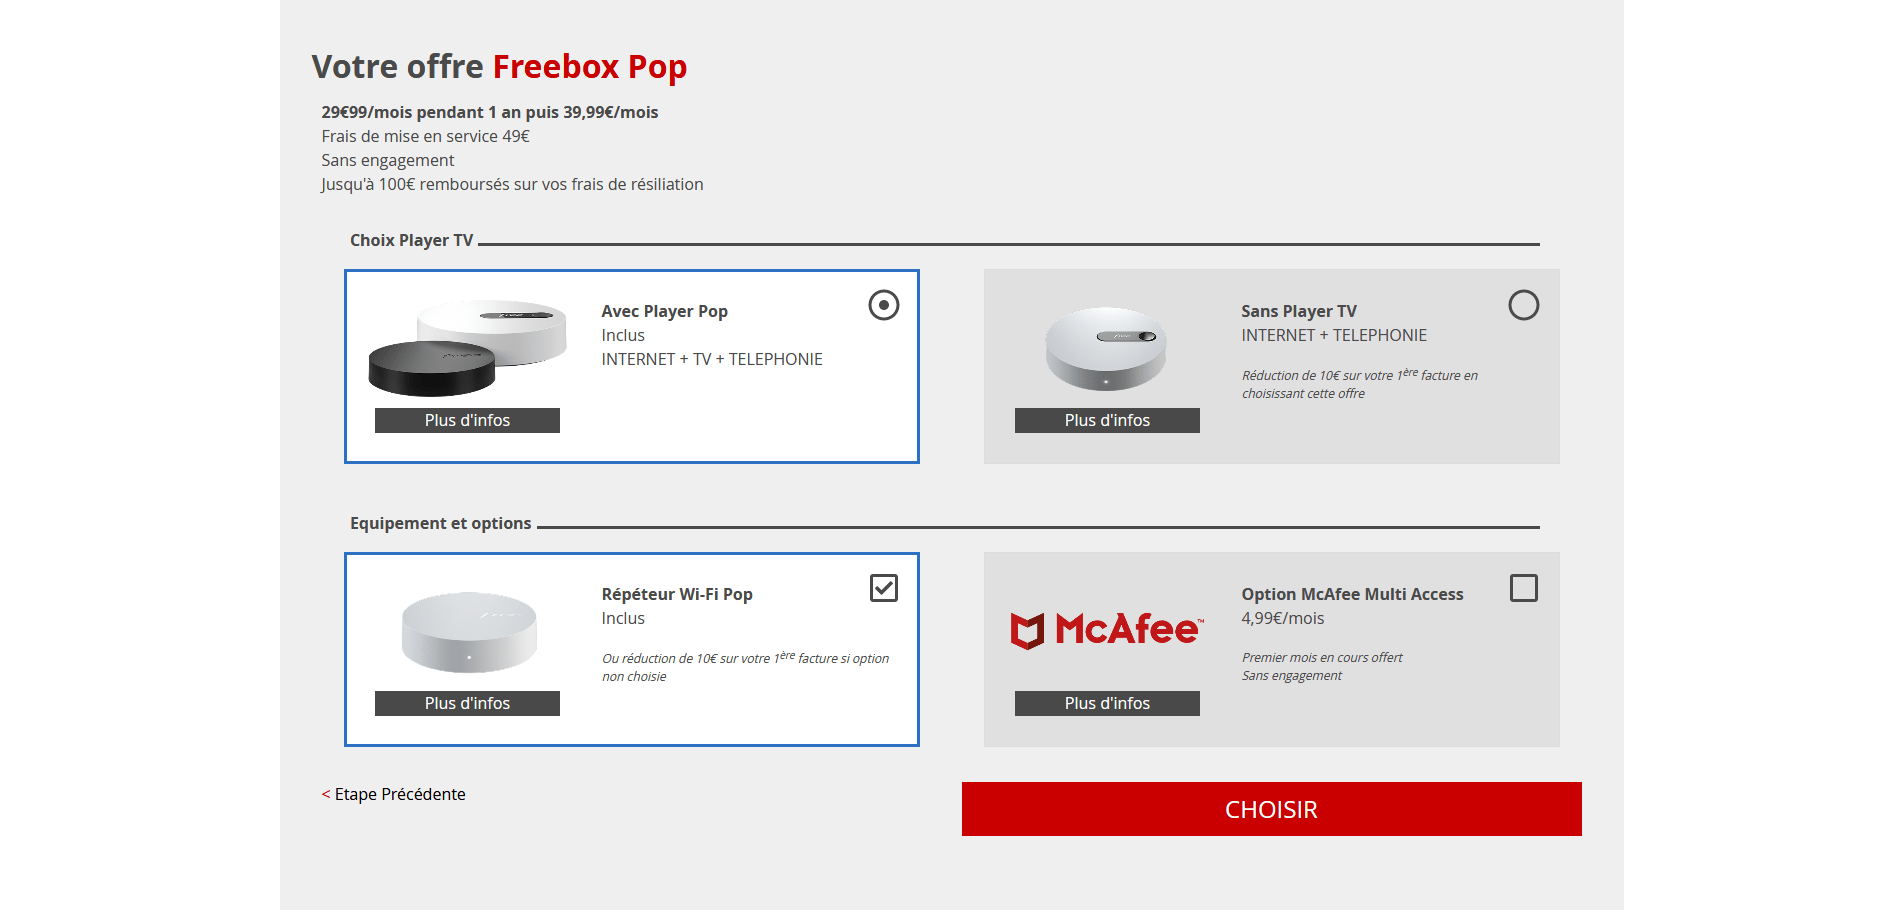 Le répéteur Wi-Fi est-il la meilleure idée de la Freebox Pop